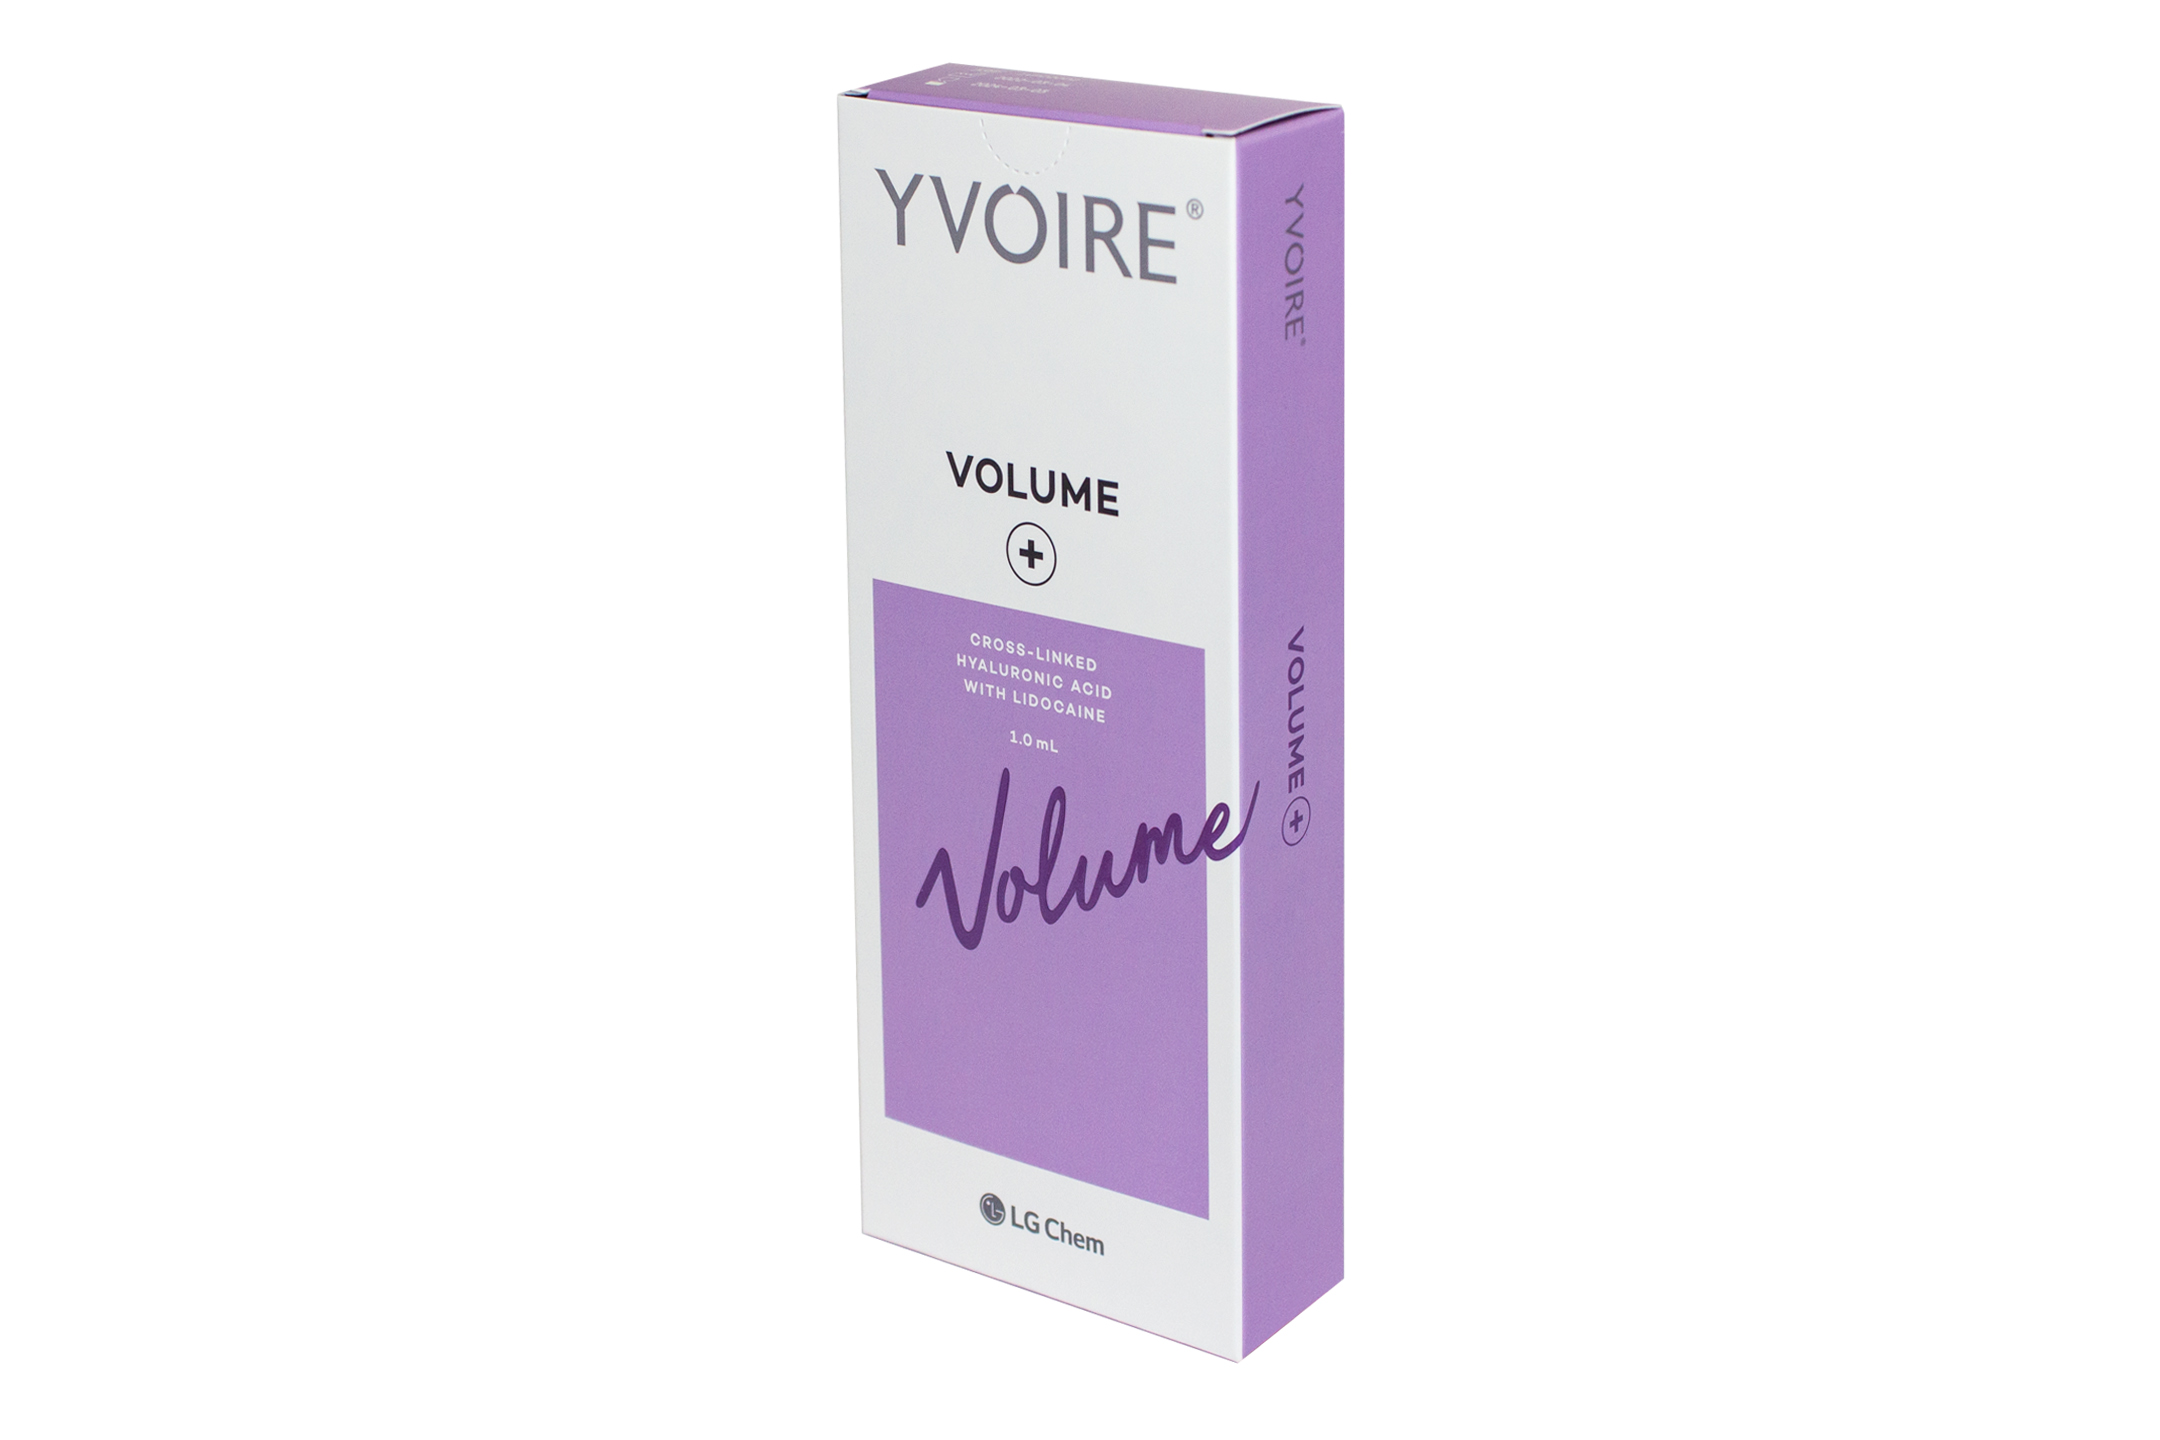 YVOIRE Volume Plus Side